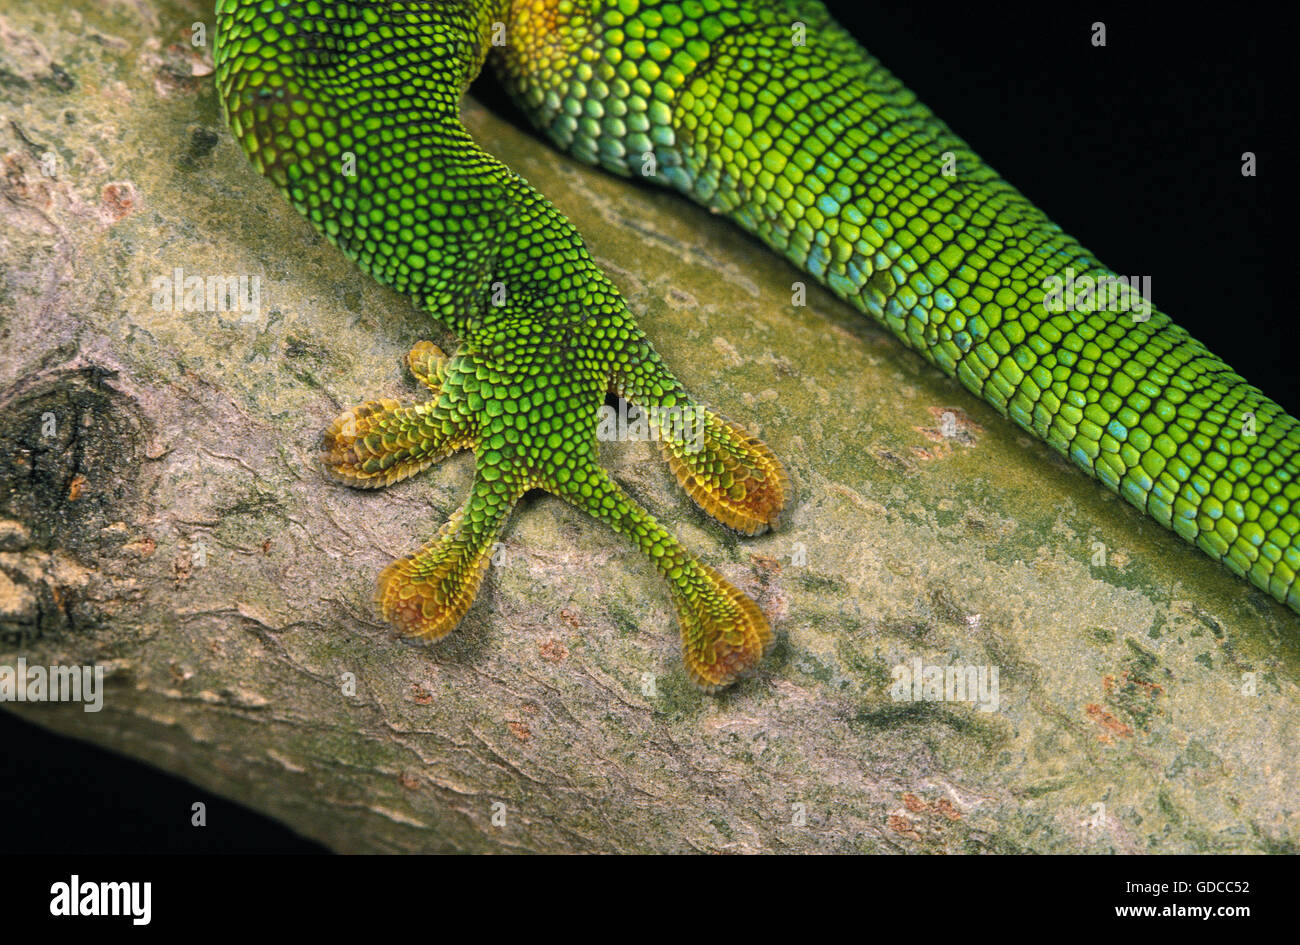 Madagascar Day Gecko, phelsuma madagascariensis, Adult, Close-up of Leg Stock Photo